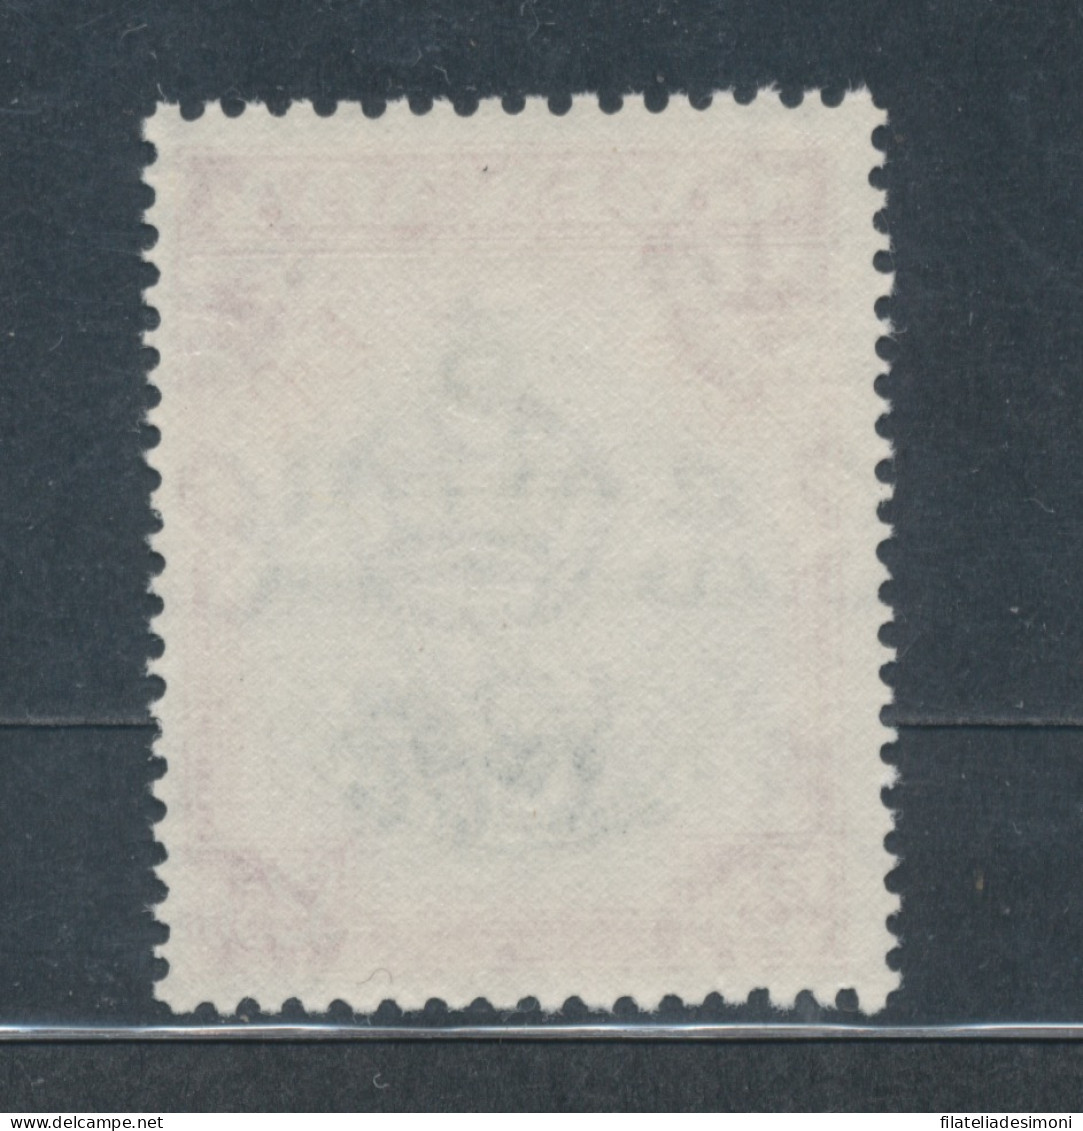 1953-59 Grenada, Stanley Gibbons N. 204 - $ 2,50 Slate Blue And Carmine -MNH** - Altri & Non Classificati